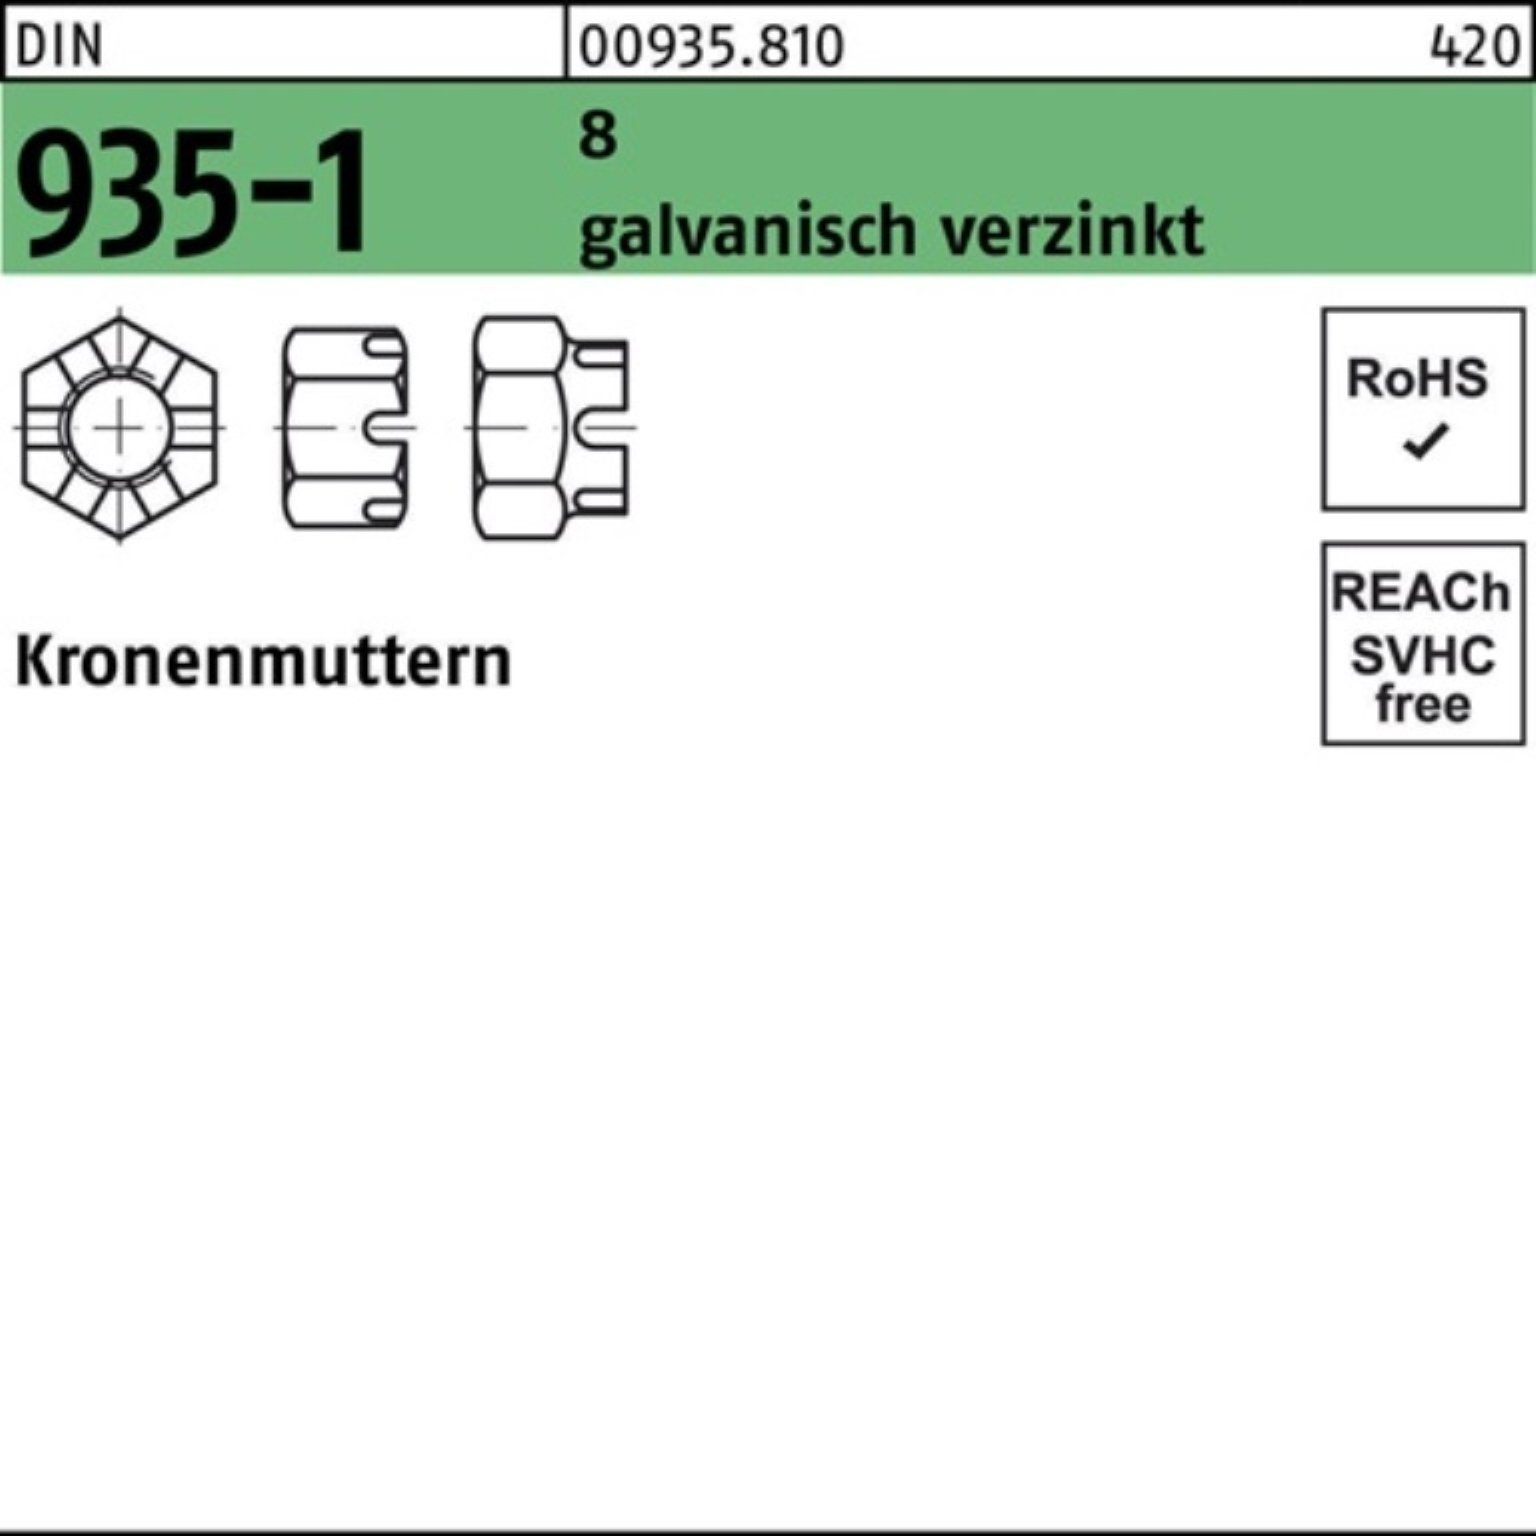 Reyher Kronenmutter 100er M24 935-1 Pack 935-1 Kronenmutter DIN galv.verz. 8 Stück DIN 25